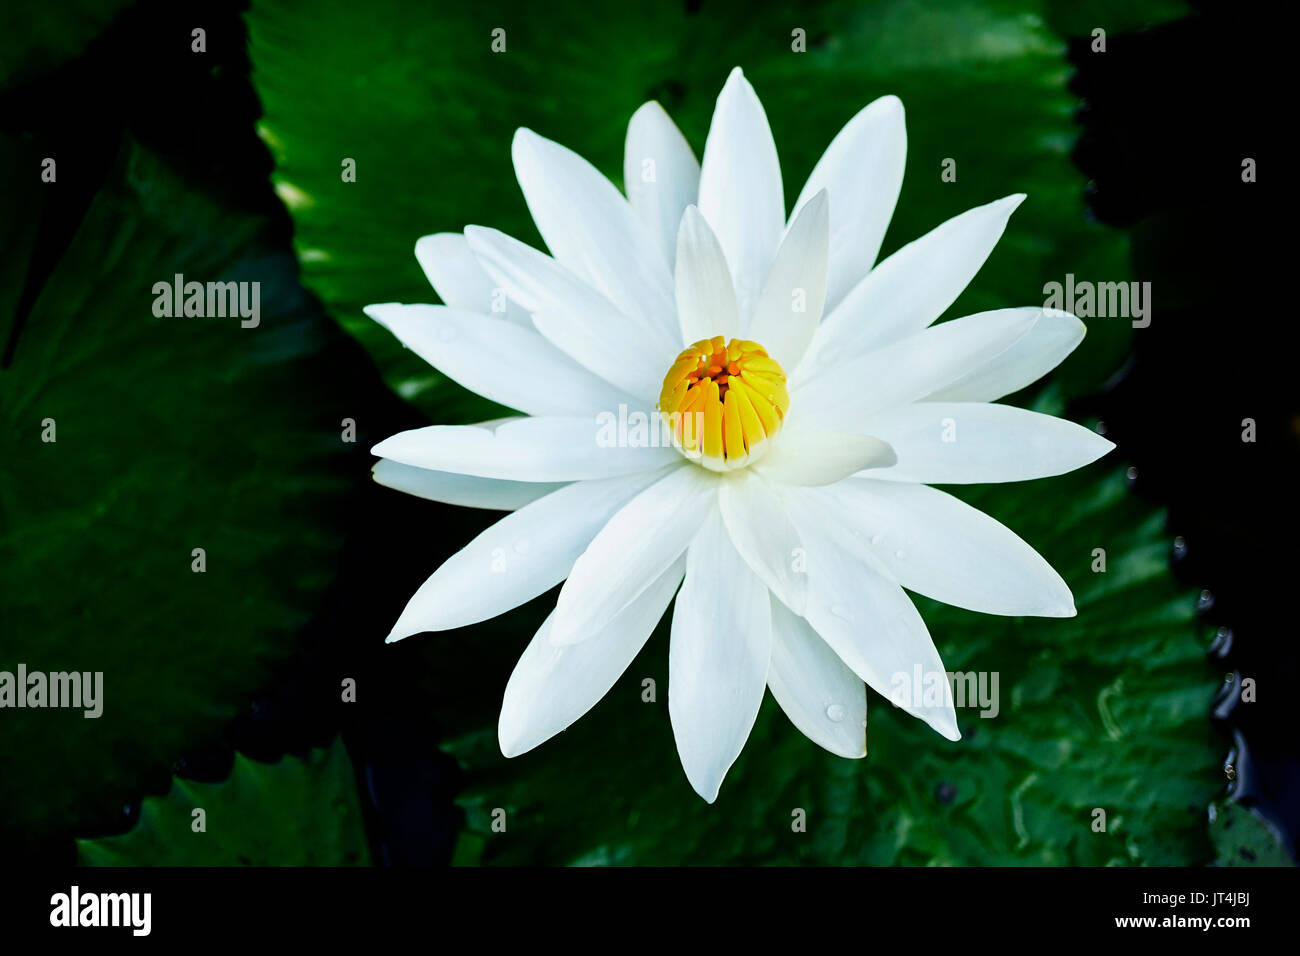 Close-up d'une fleur de lotus ouverte avec des pétales blancs et jaunes dans un noyau fermé lac sombre avec des feuilles vertes. Banque D'Images